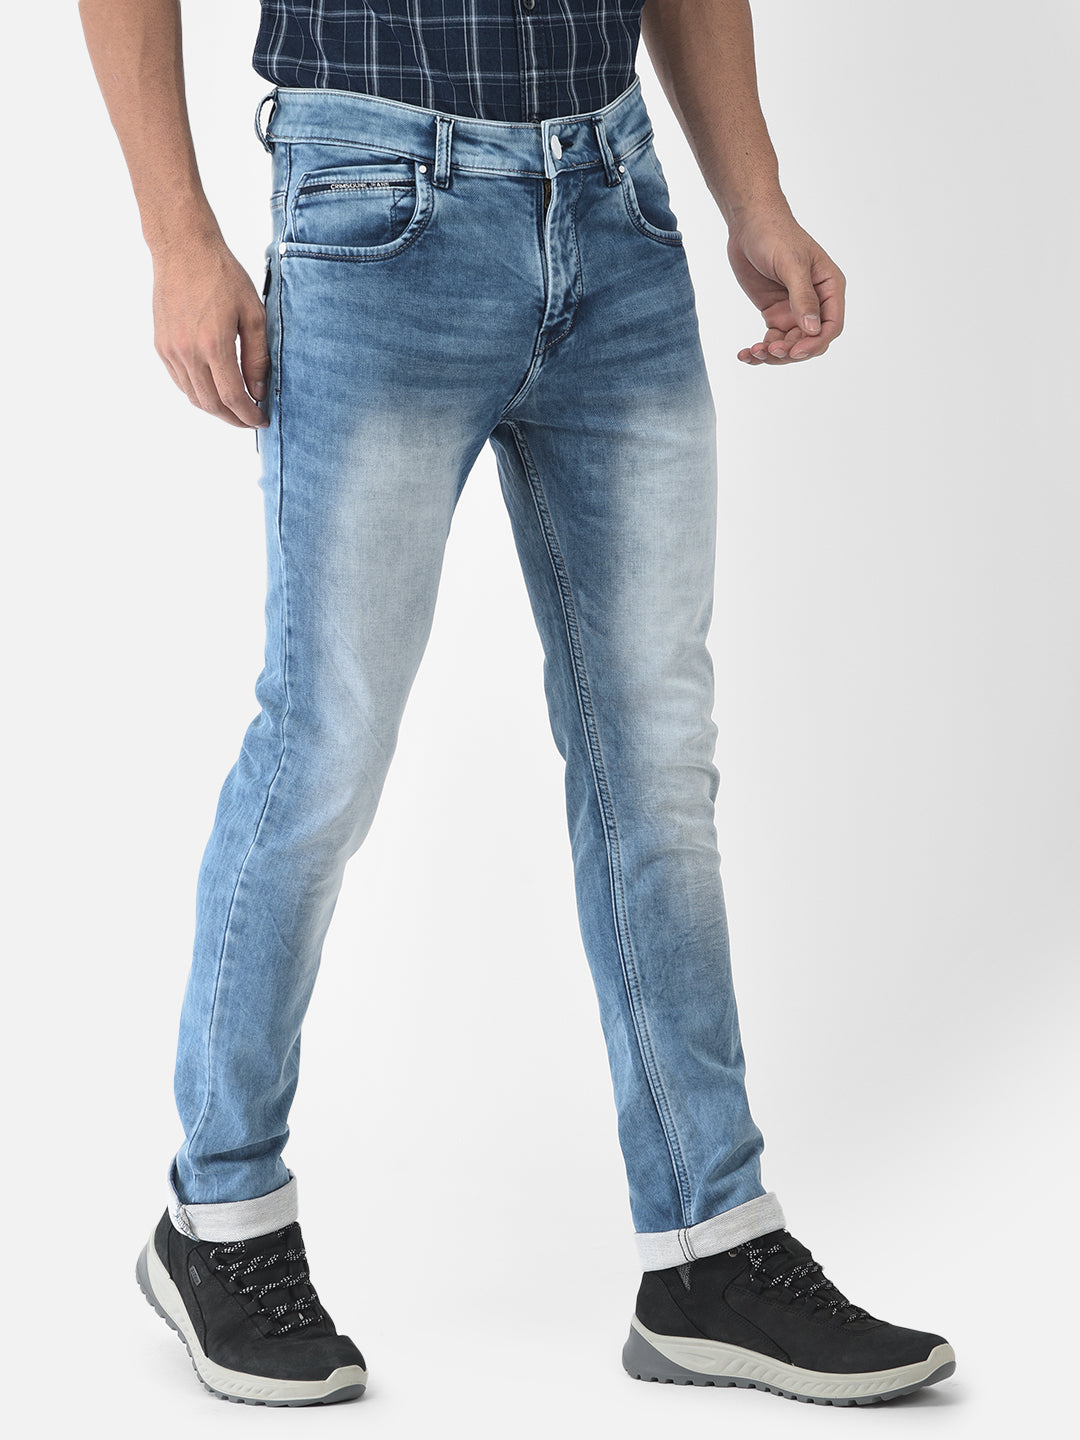 Heavy Faded Blue Jeans - Men Jeans